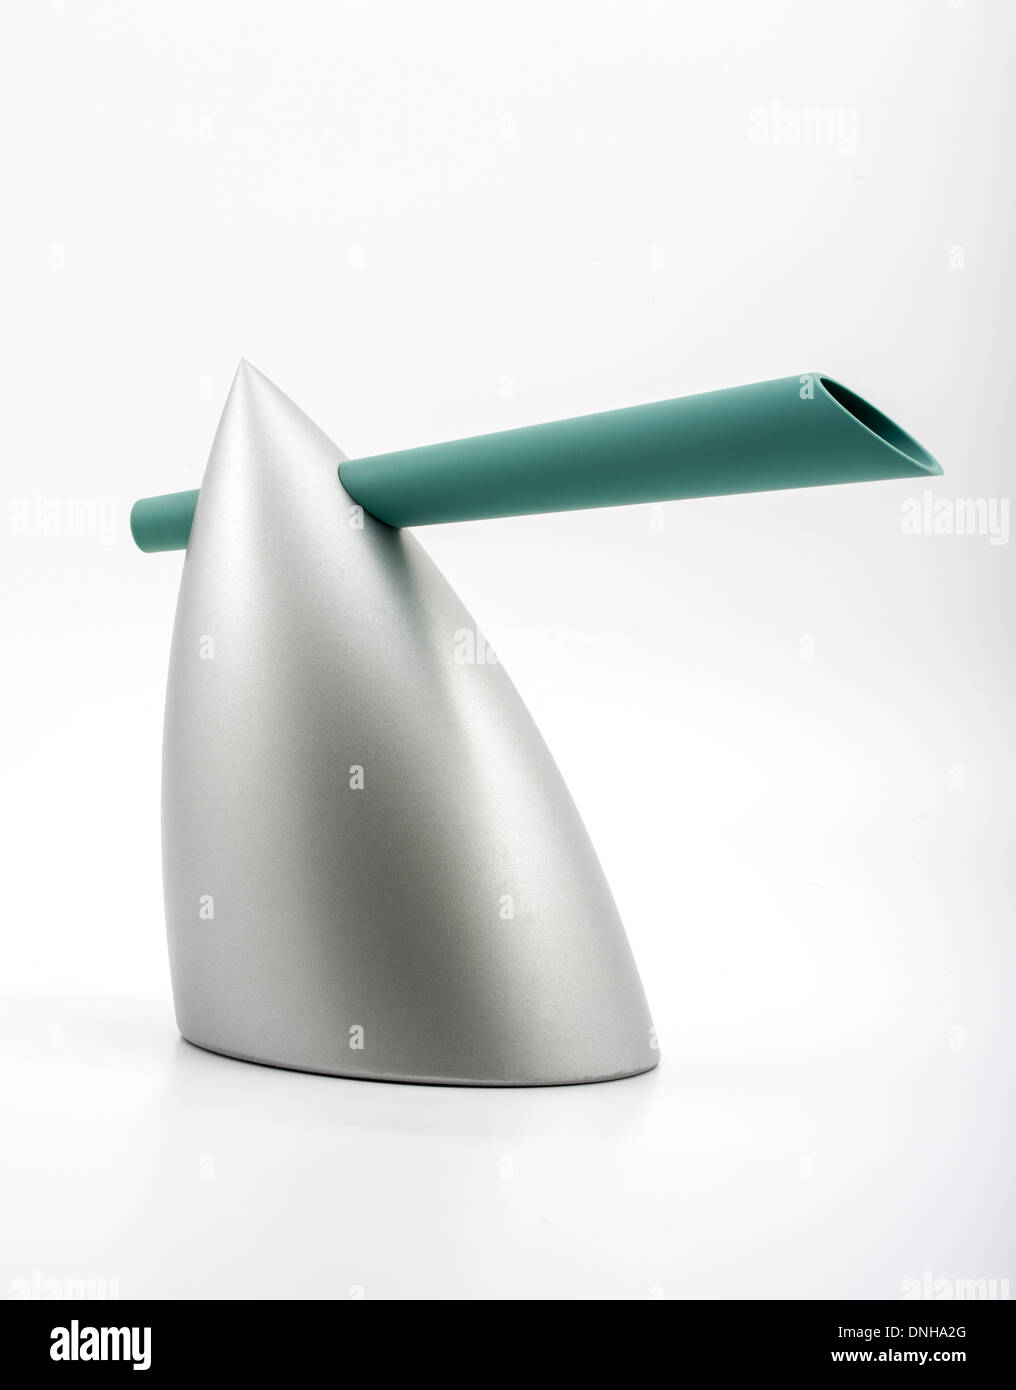 HOT BERTAA / Bollitore d' acqua progettato da Philippe Starck per Alessi. Design iconico in cucina / apparecchi elettrodomestici. Foto Stock